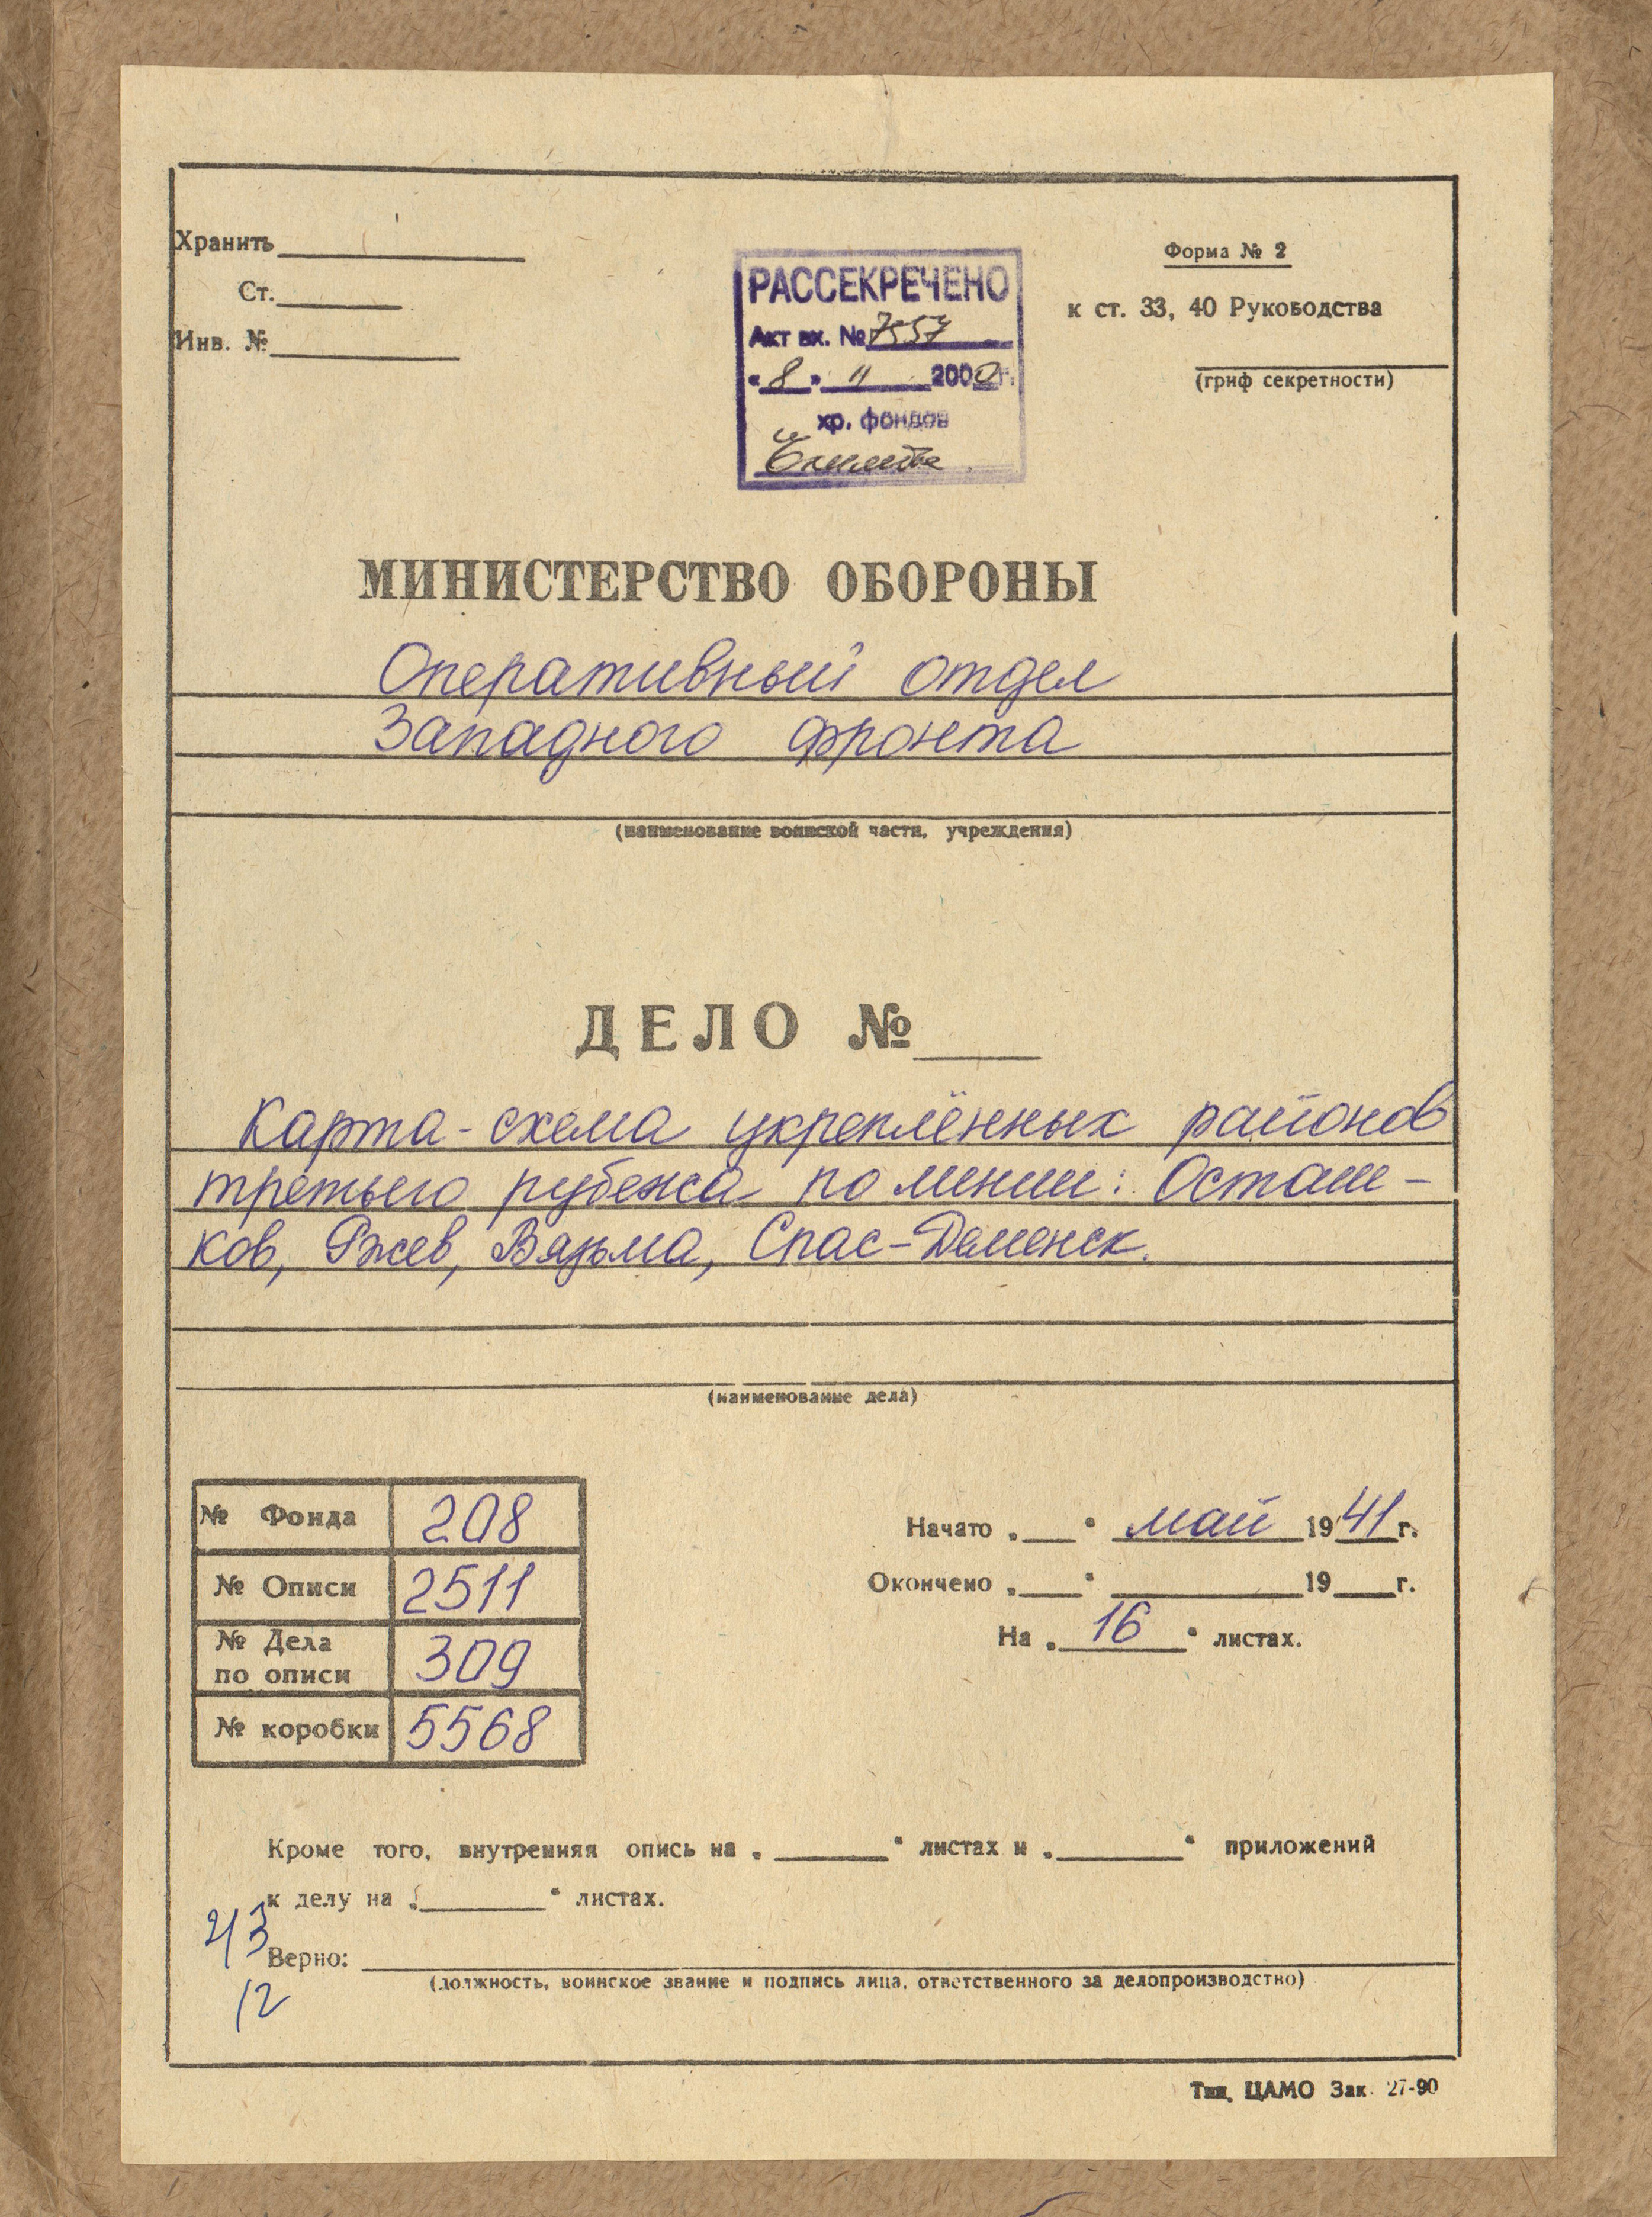 Rosyjskie mapy sztabowe 1941 SKANY 208-0002511 - 208-0002511-0309-00000001.jpg